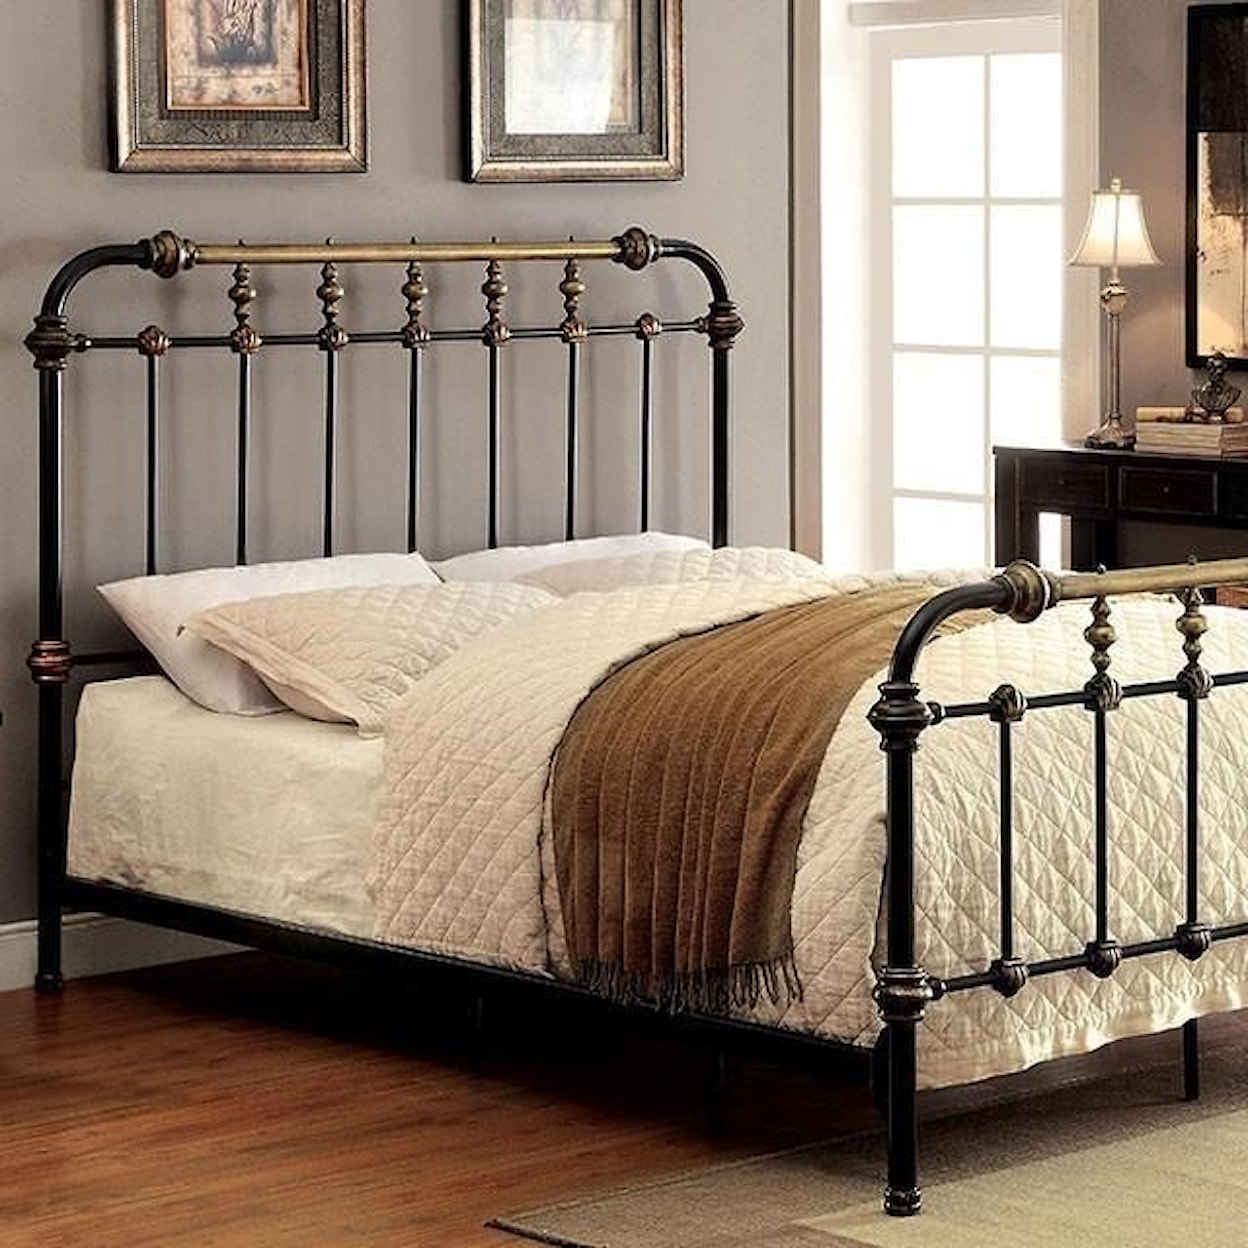 Furniture of America Riana Full Bed